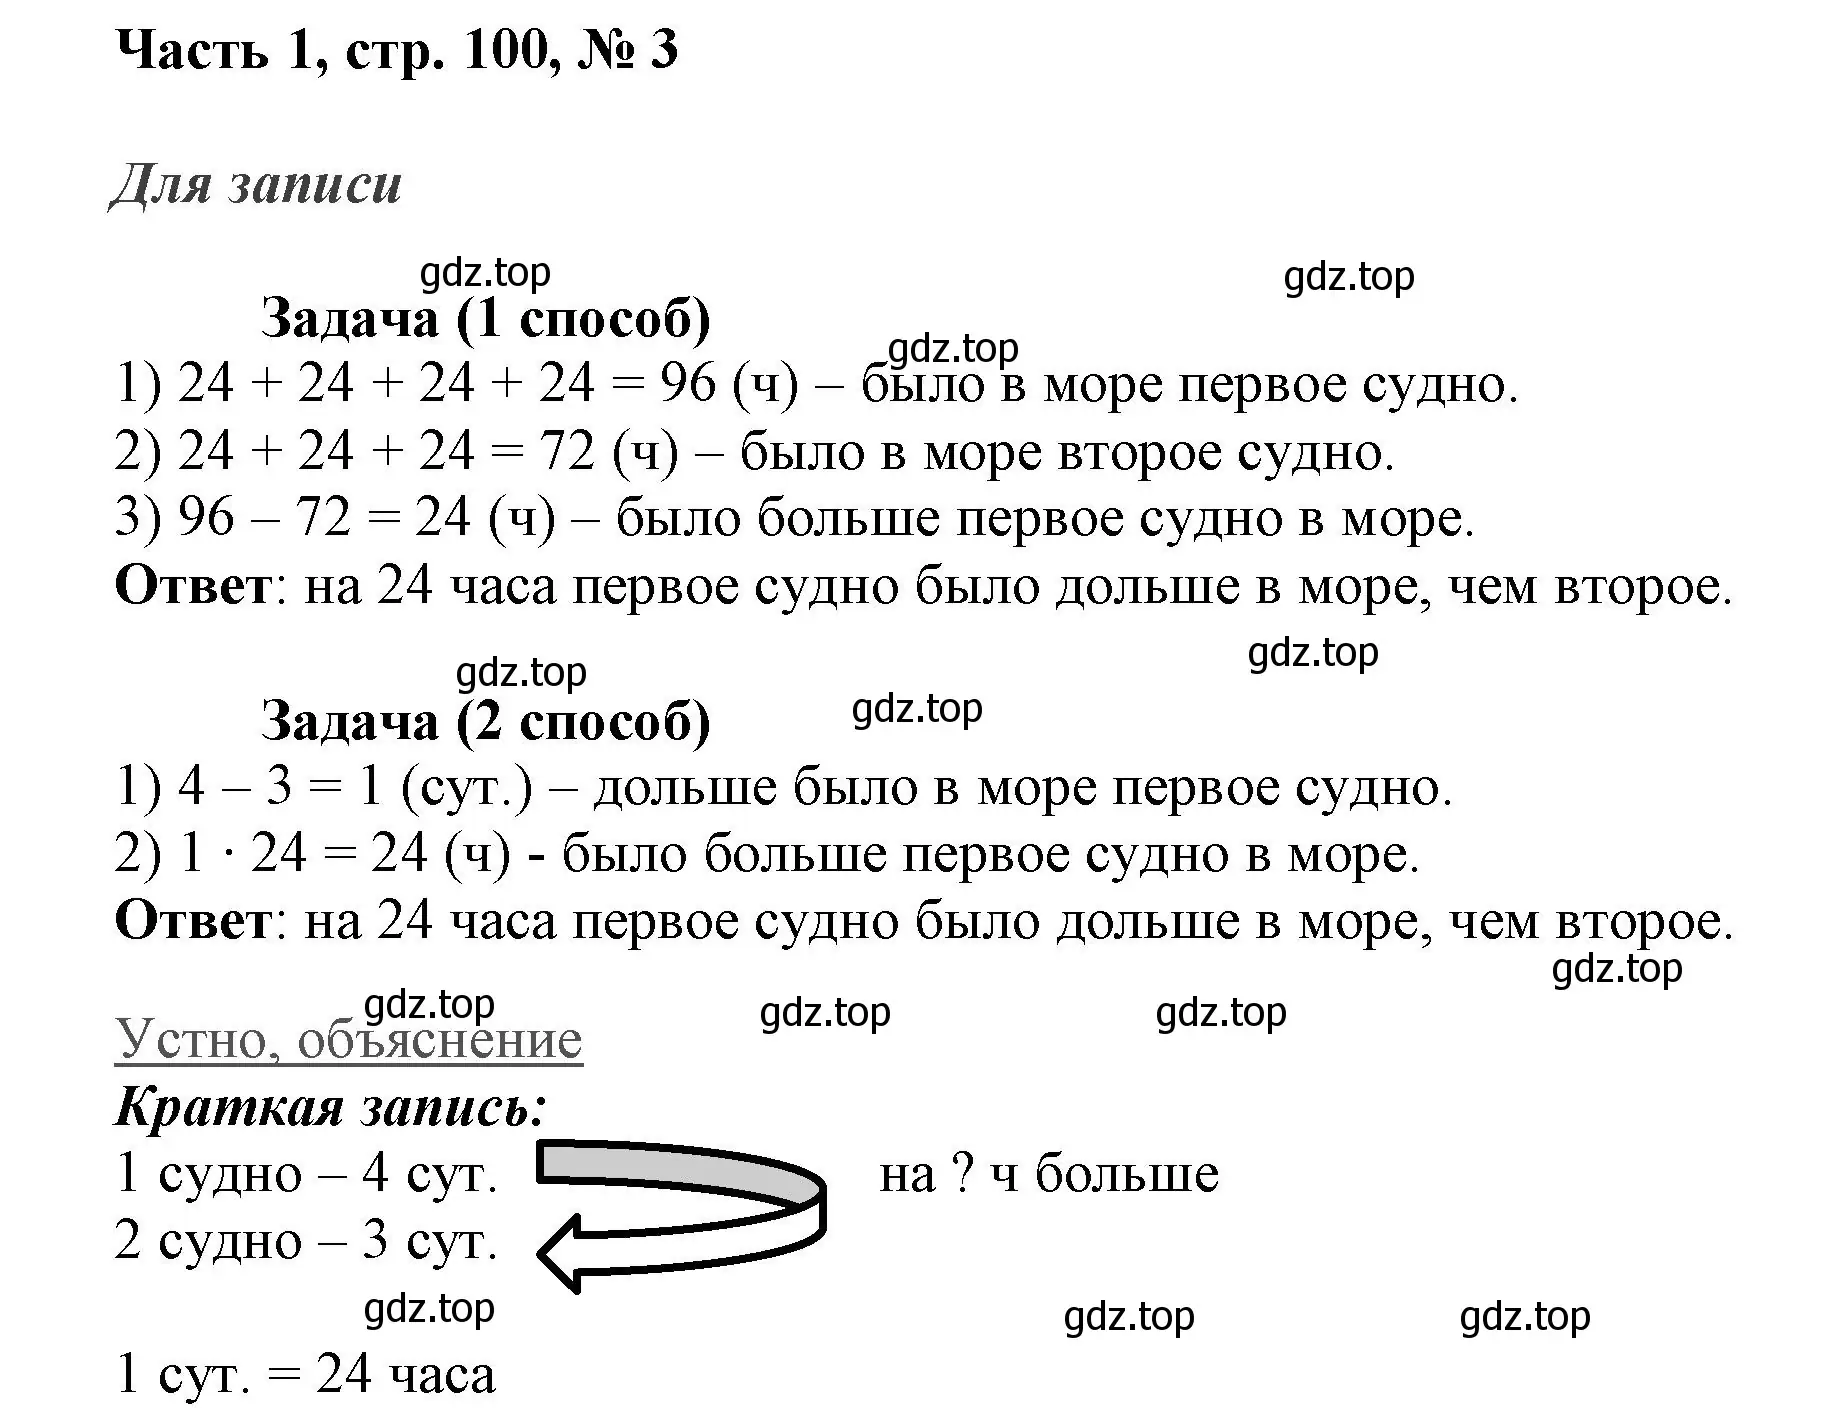 Решение номер 3 (страница 100) гдз по математике 3 класс Моро, Бантова, учебник 1 часть